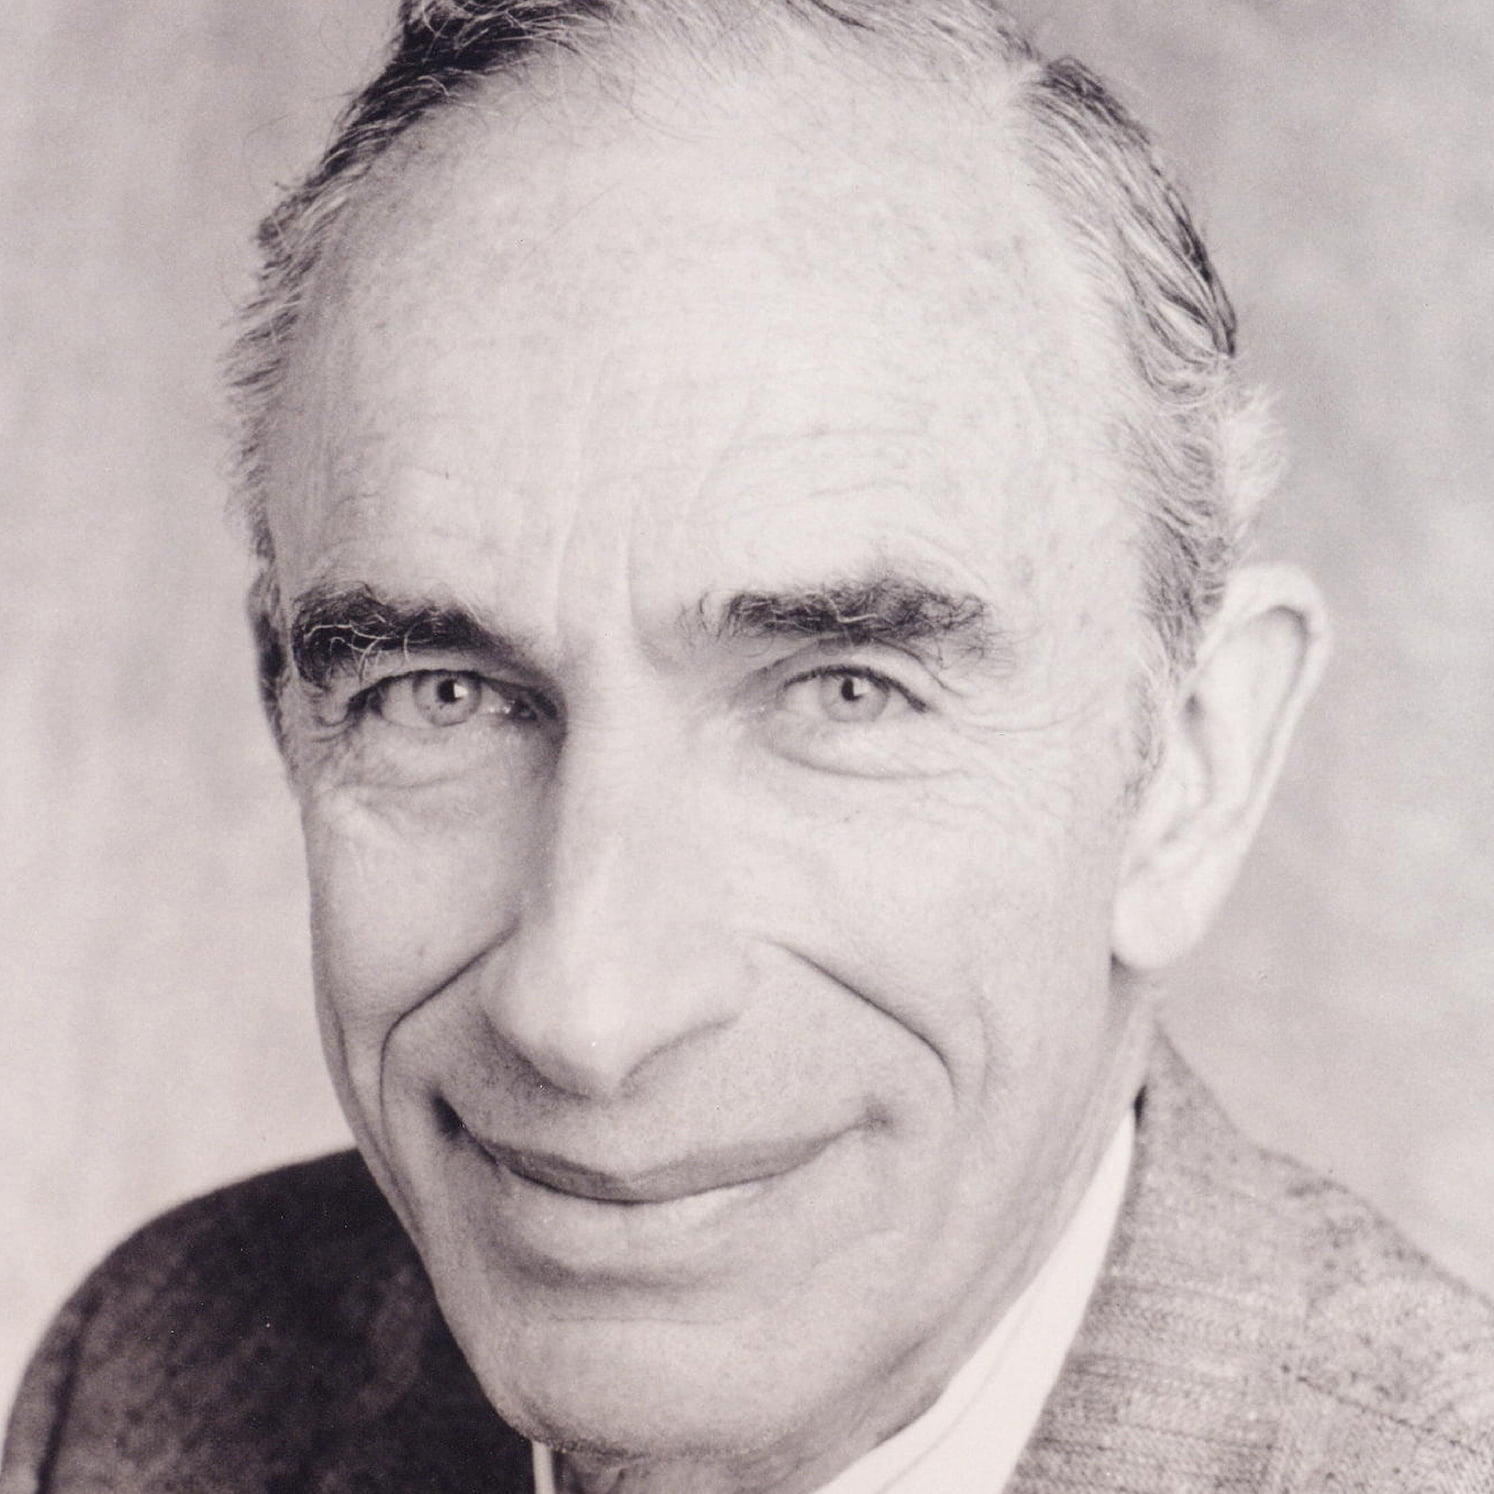 Dr. Paul R. Ehrlich